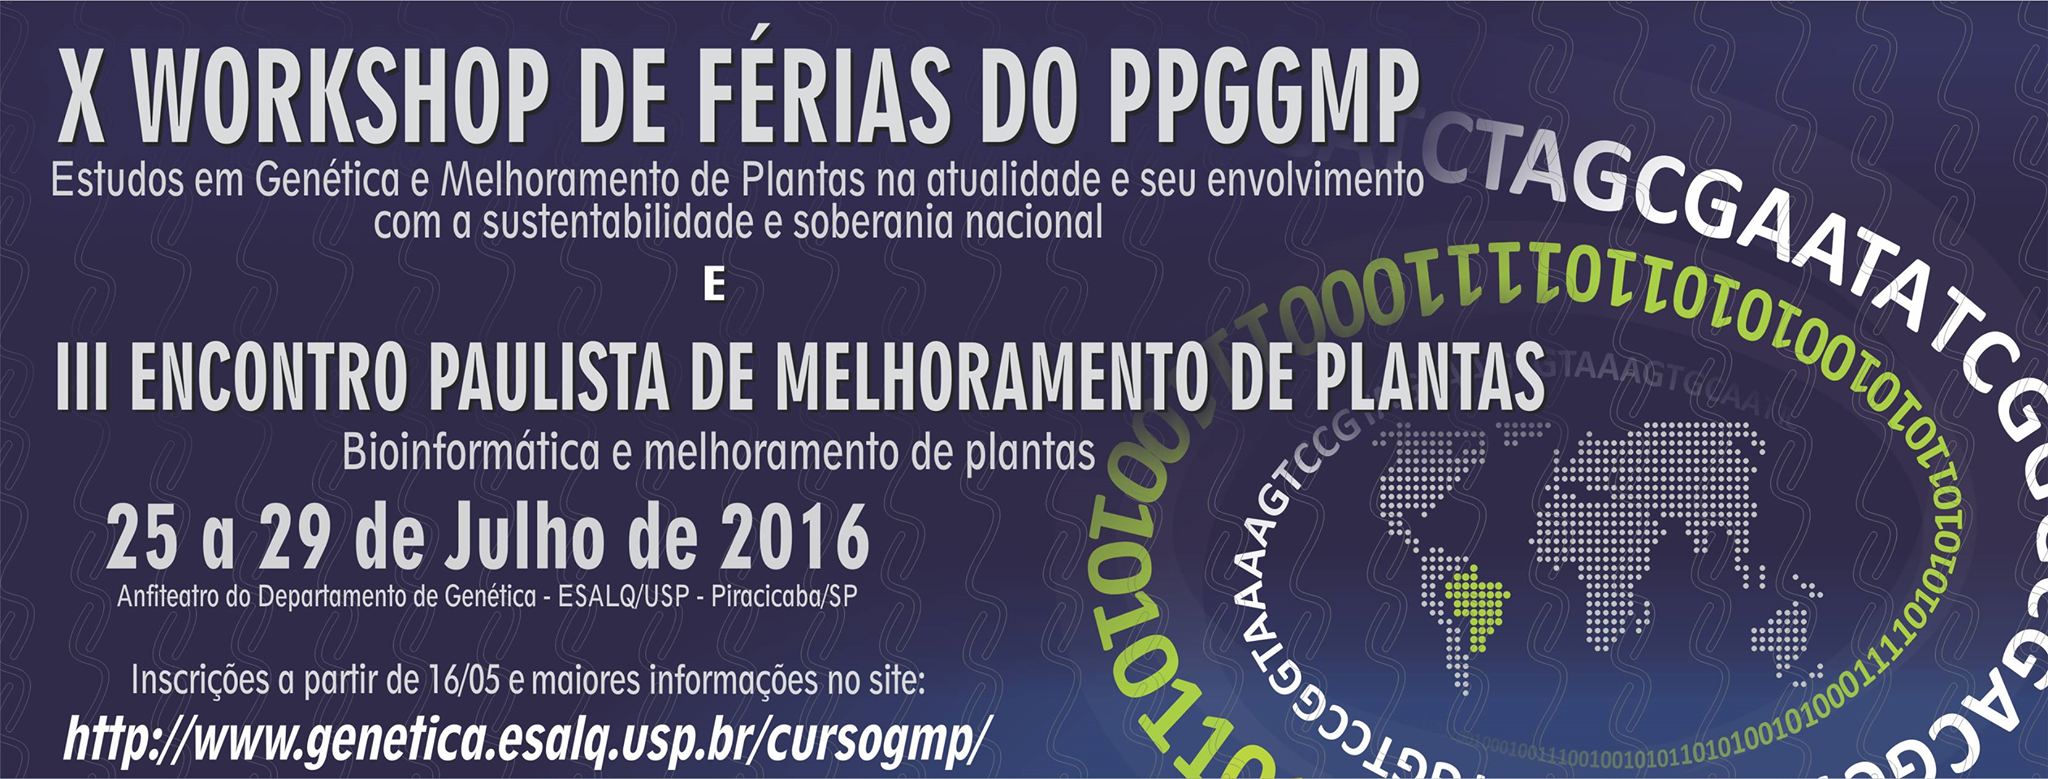 IX Workshop de Frias em Gentica e Melhoramento de Plantas